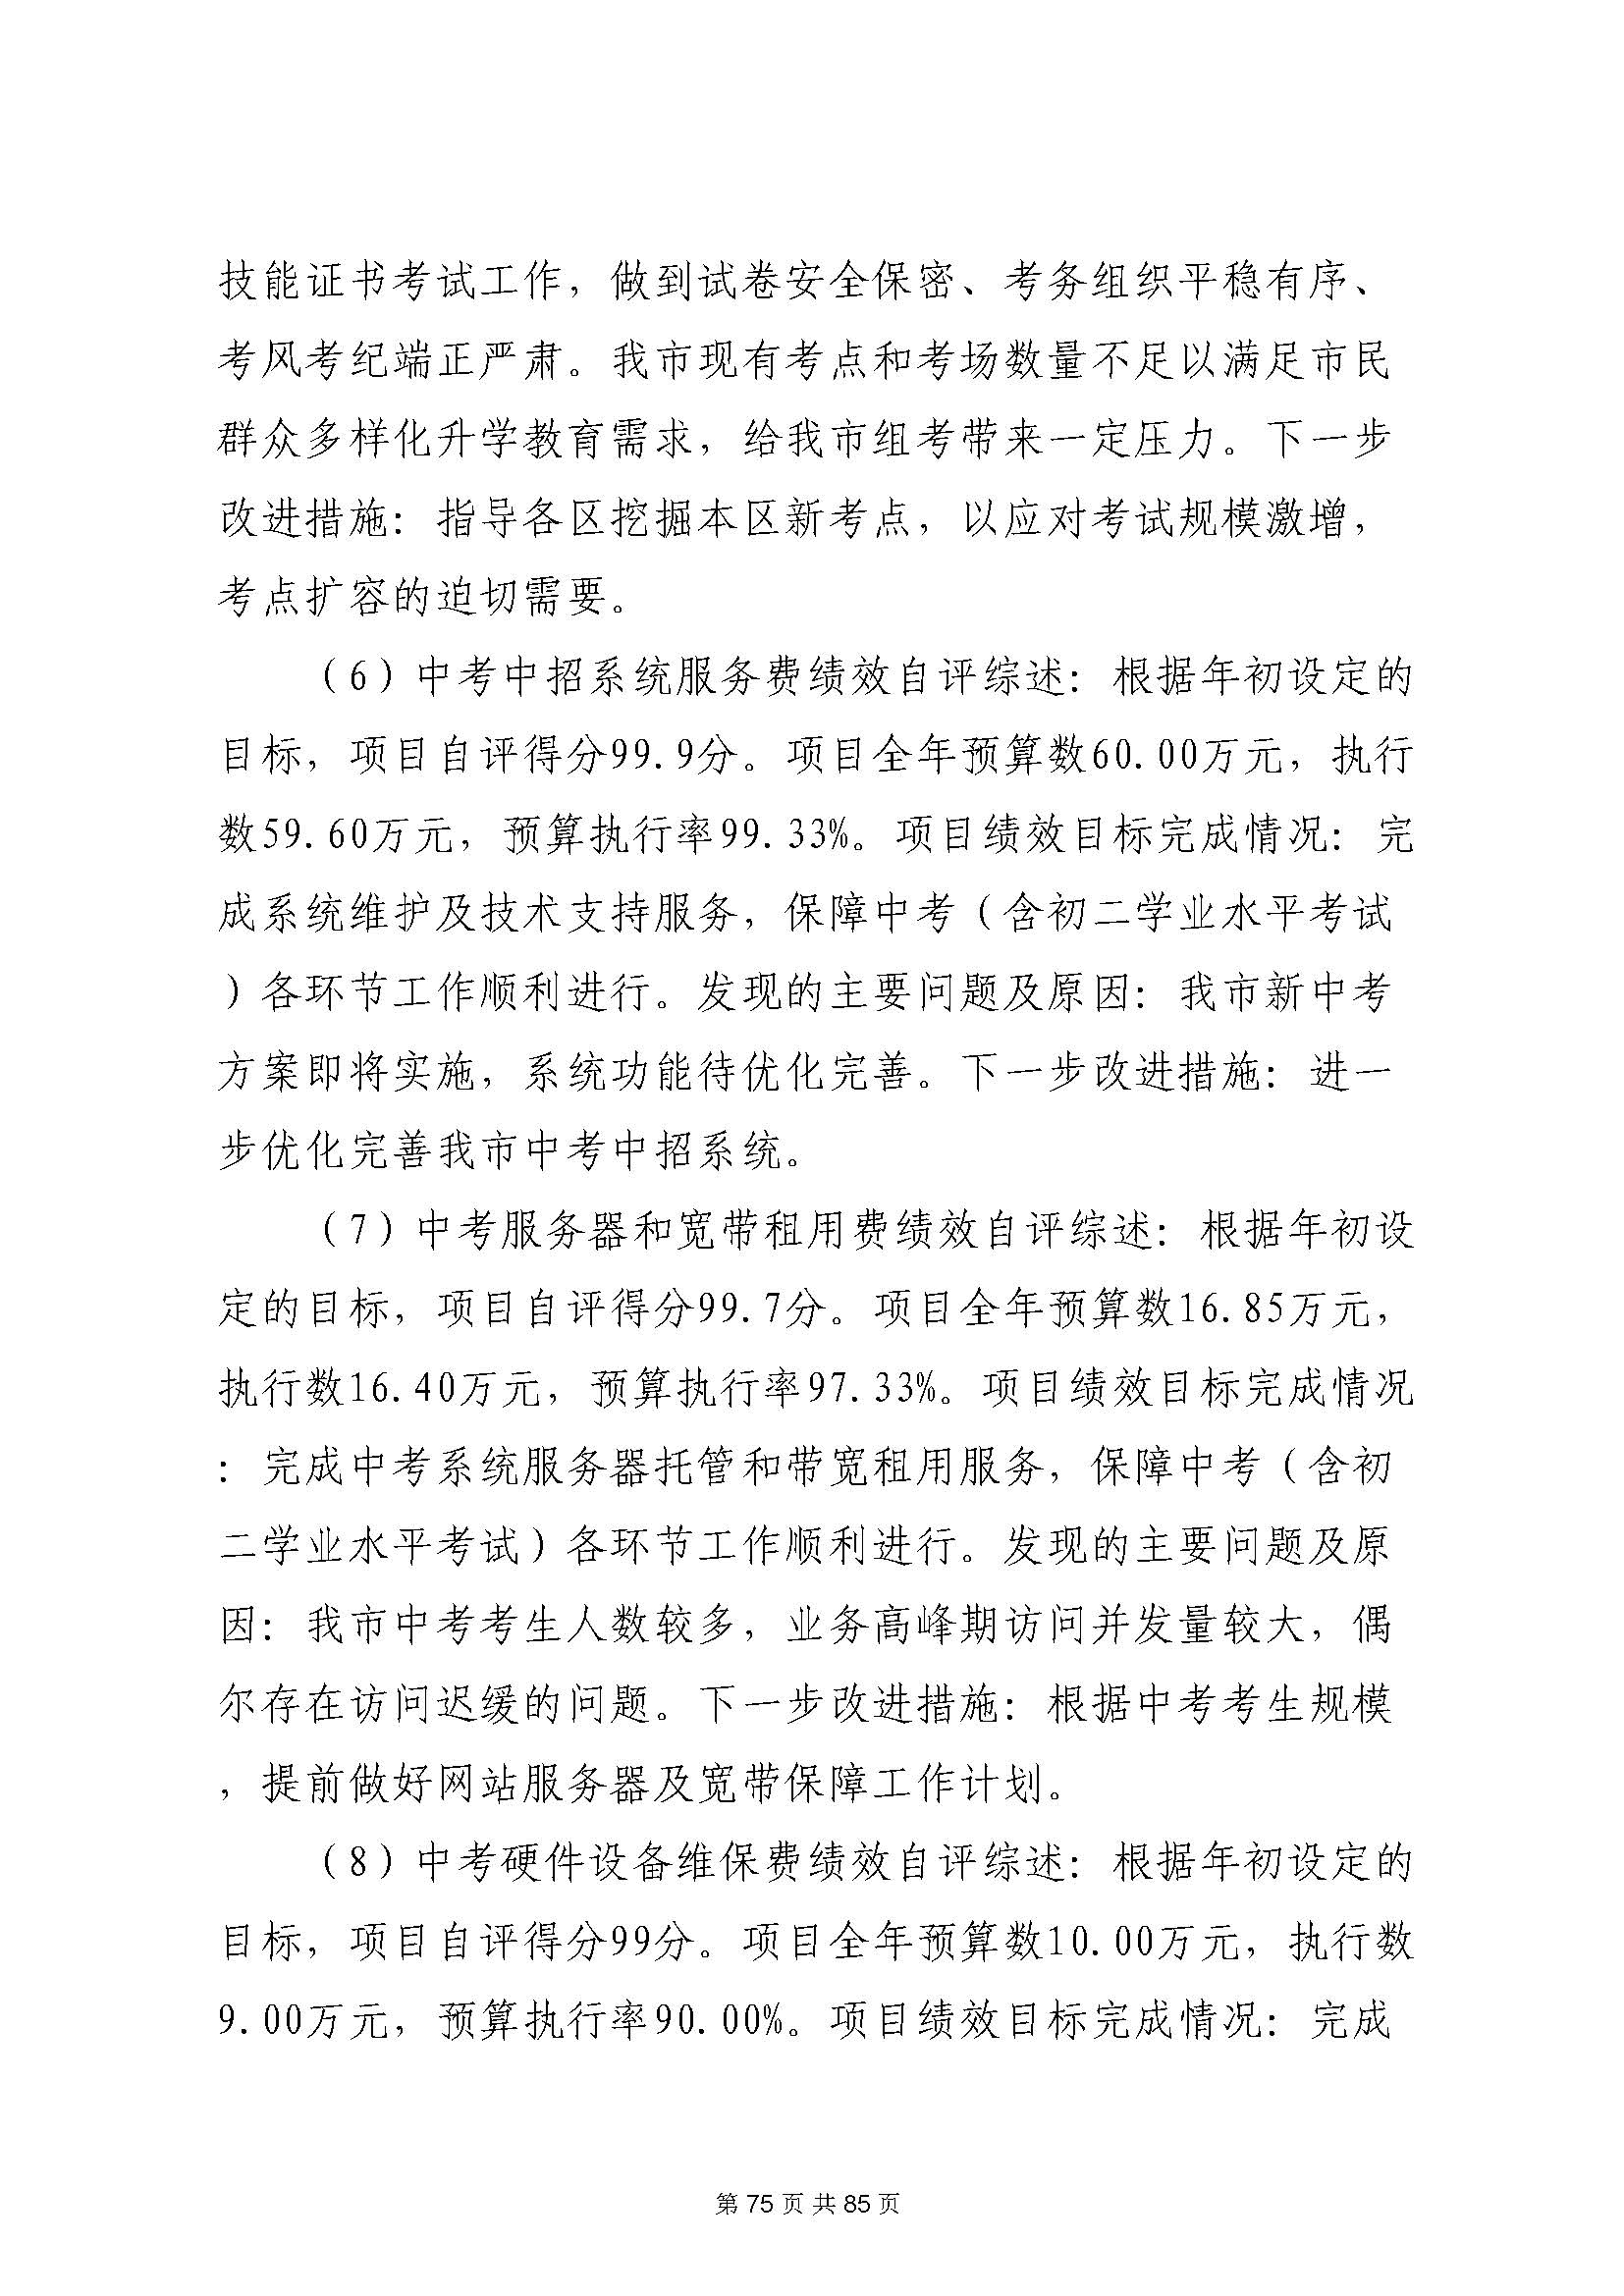 深圳市招生考试办公室2020年度部门决算_页面_76.jpg